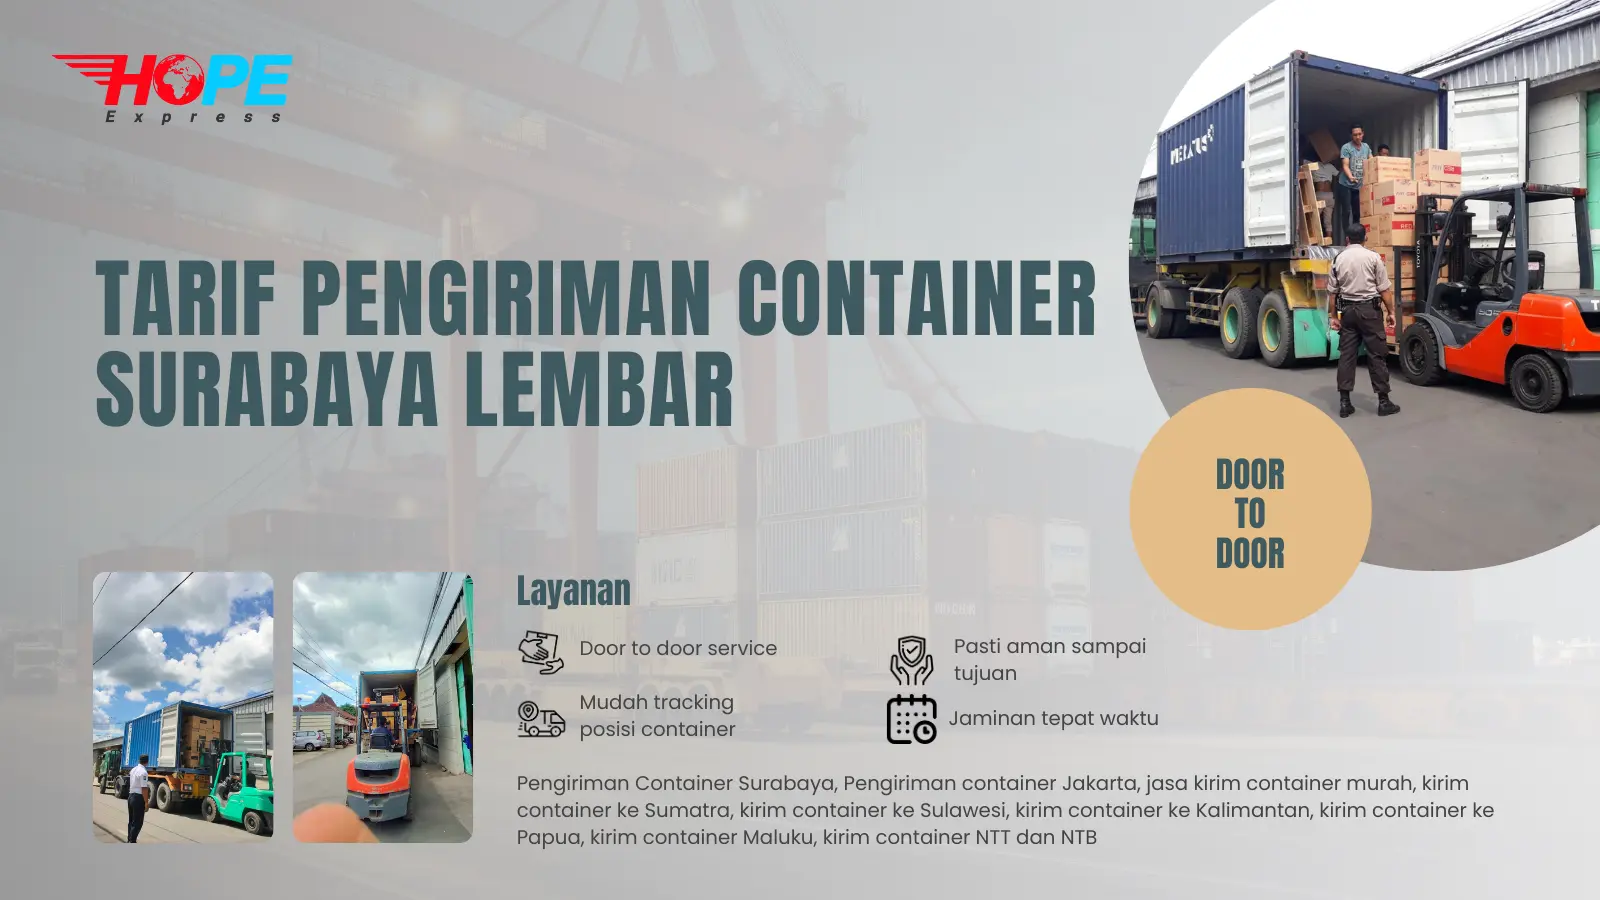 Tarif Pengiriman Container Surabaya Lembar